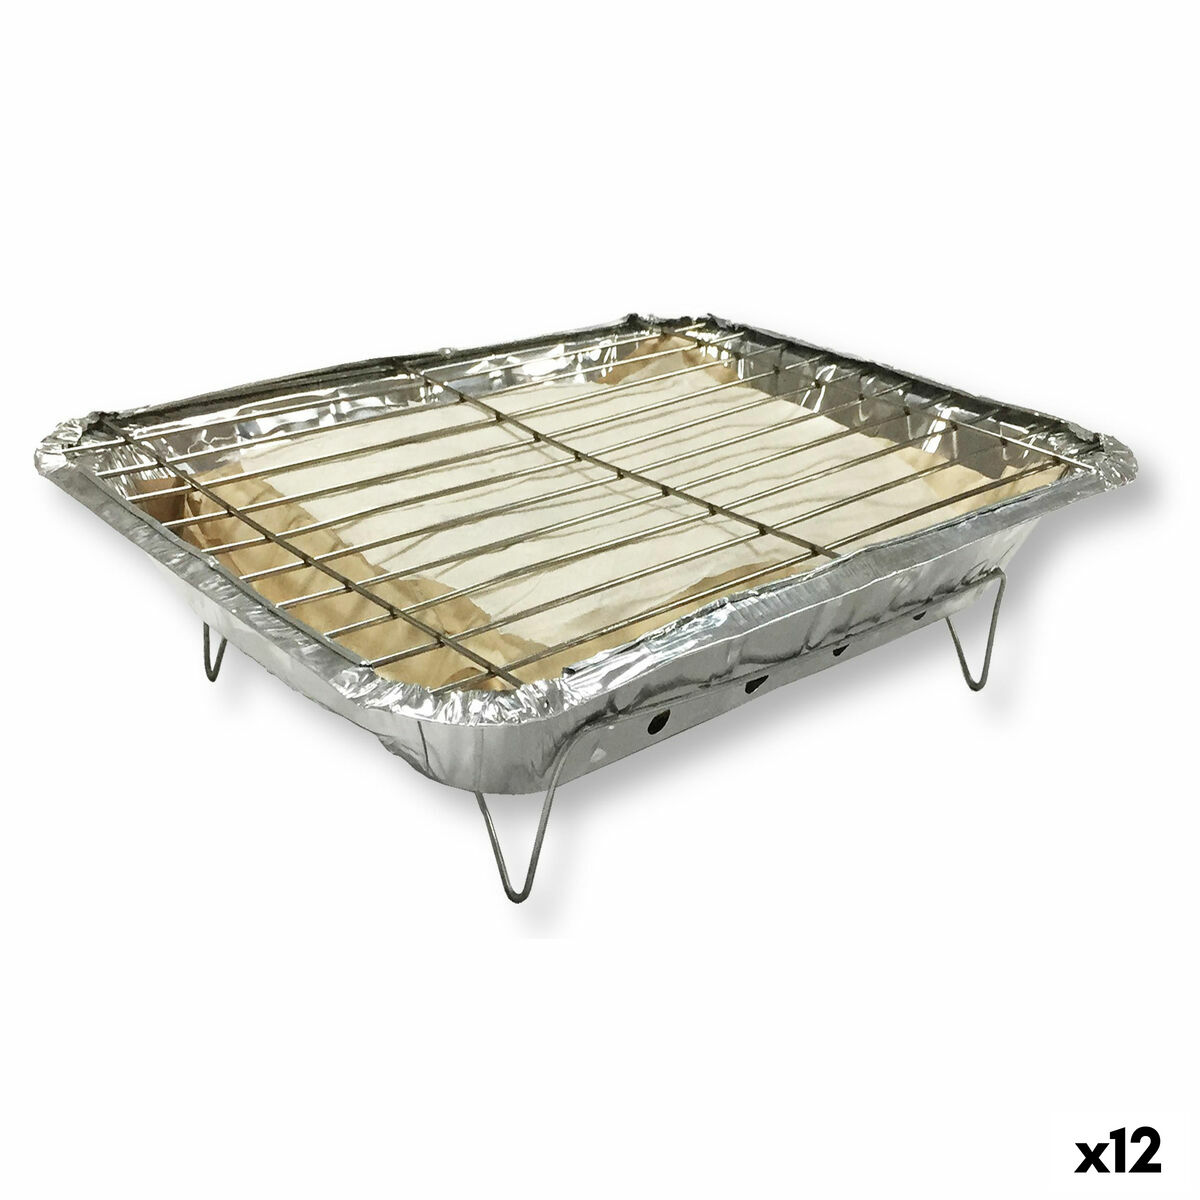 Barbecue Usa e Getta Algon istantanea 24 x 31 x 6 cm (12 Unità)